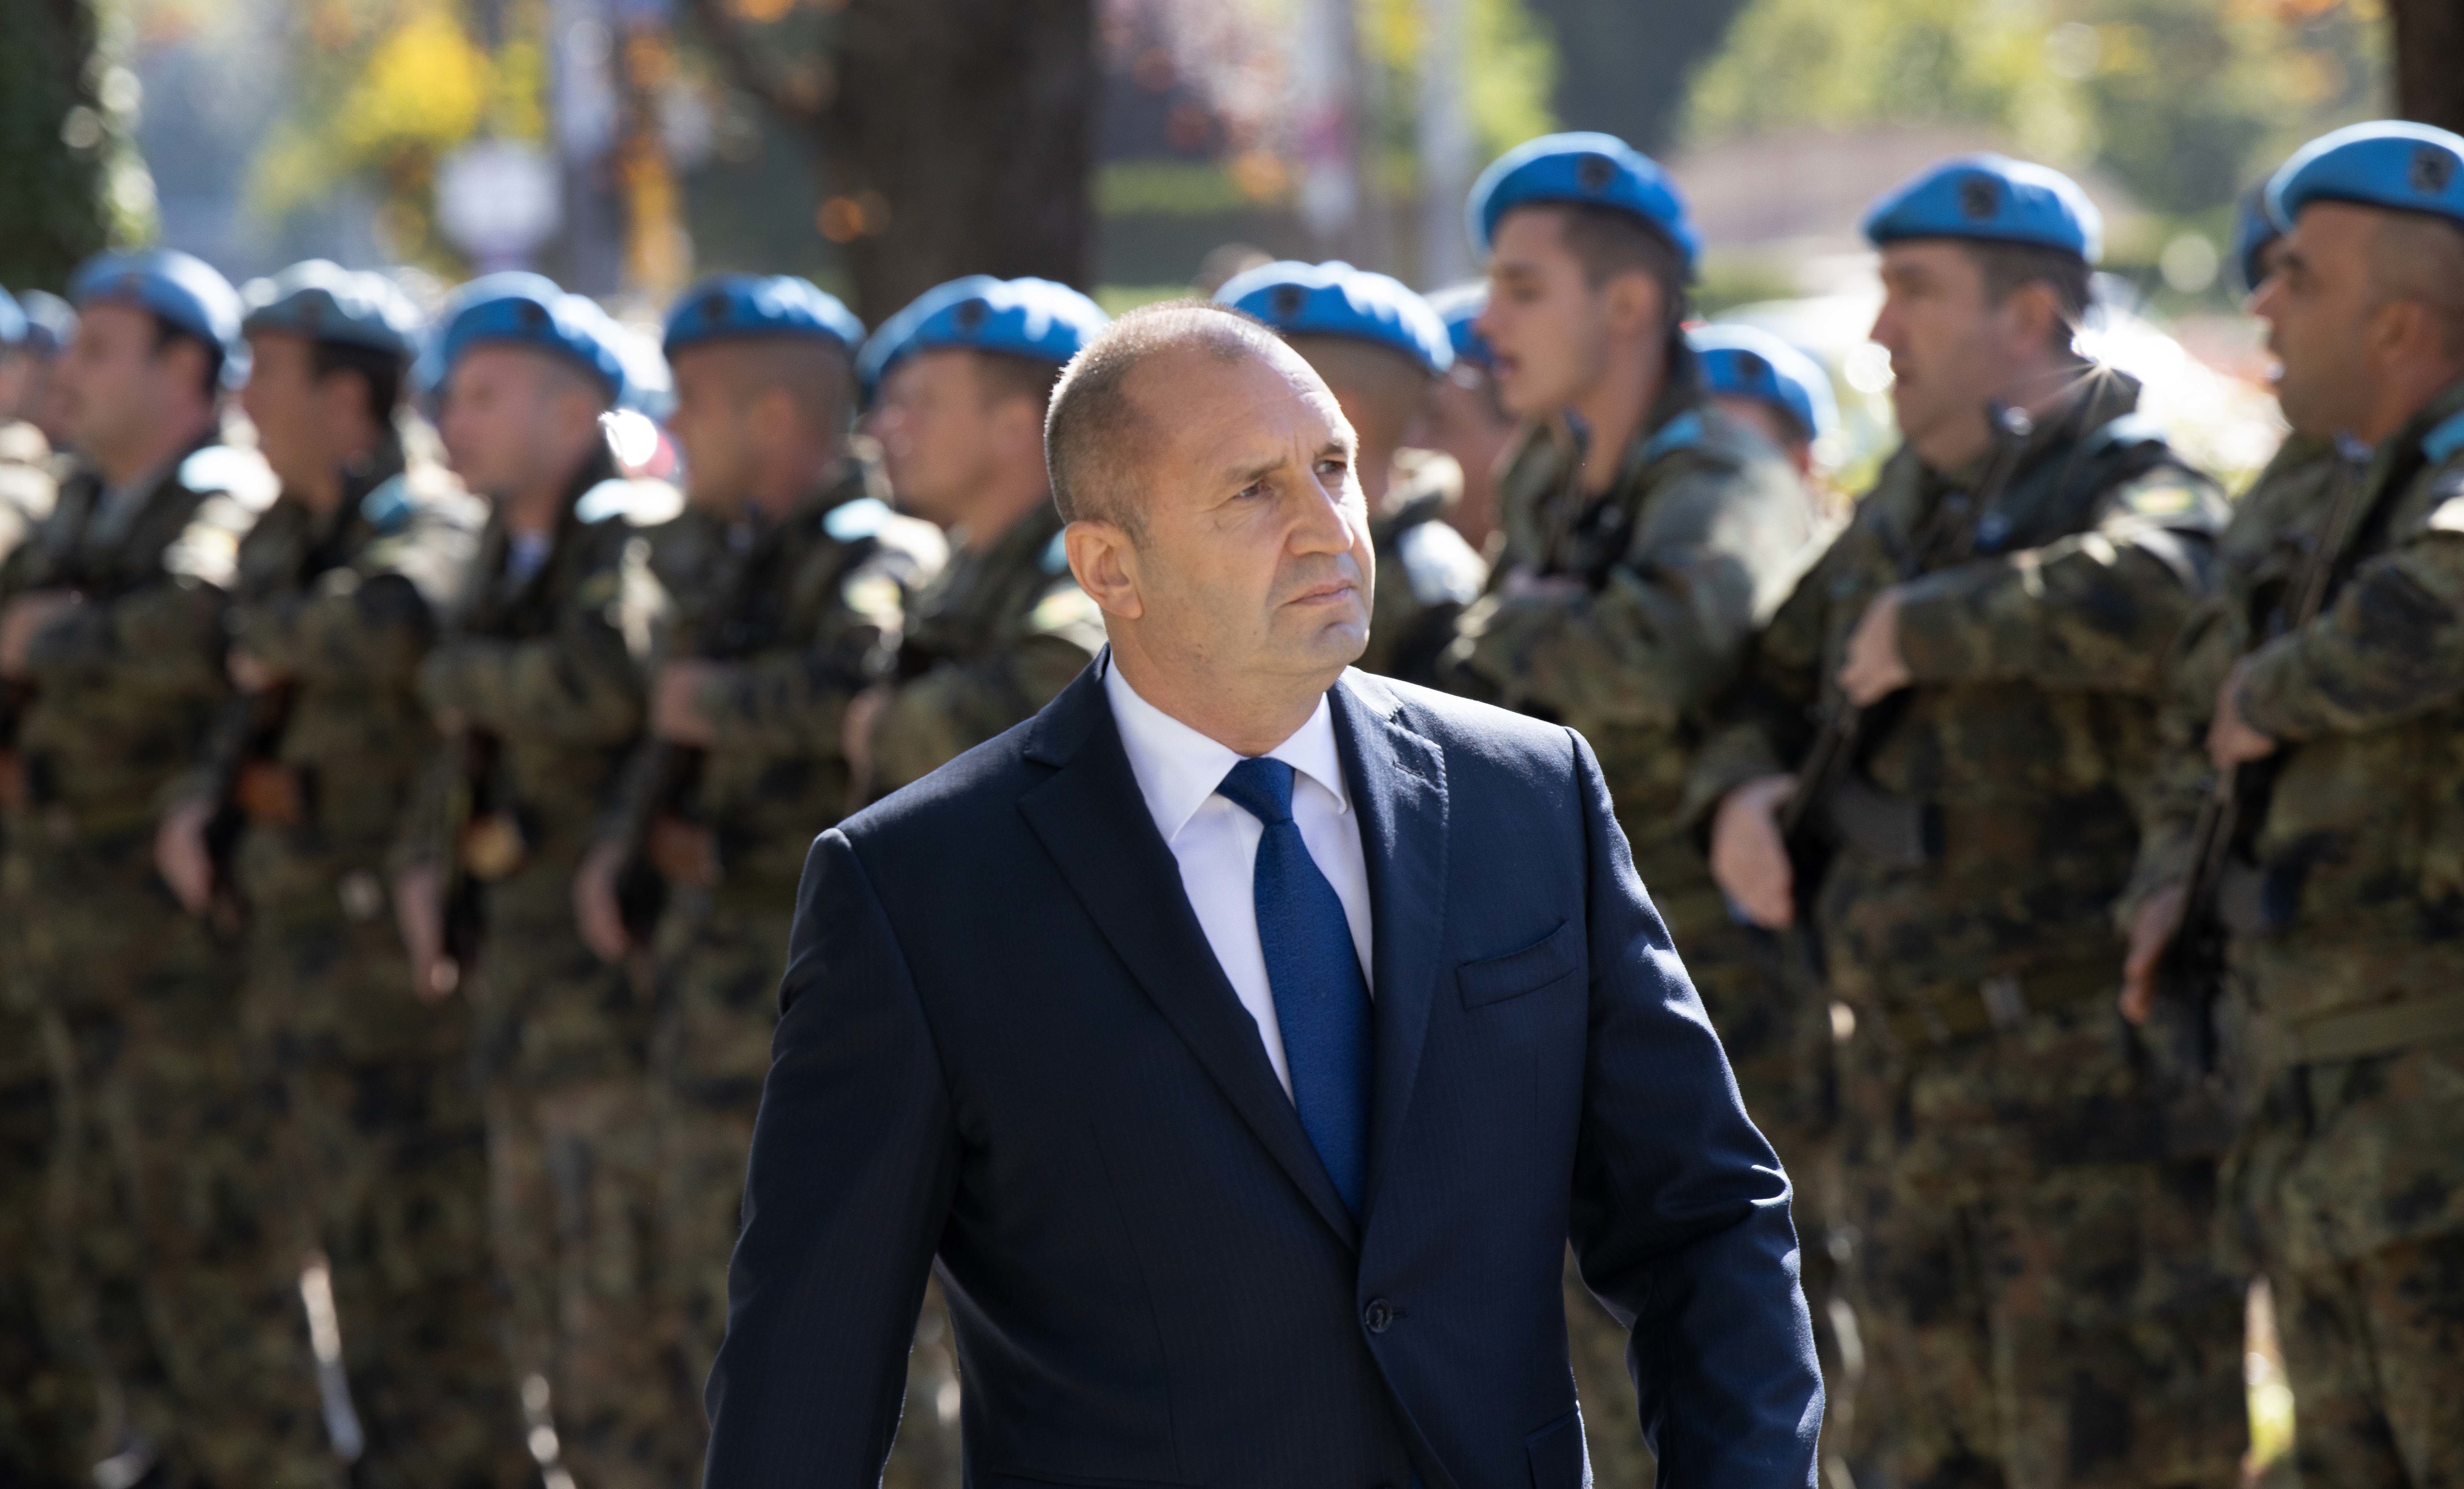 Държавният глава и върховен главнокомандващ на Въоръжените сили Румен Радев